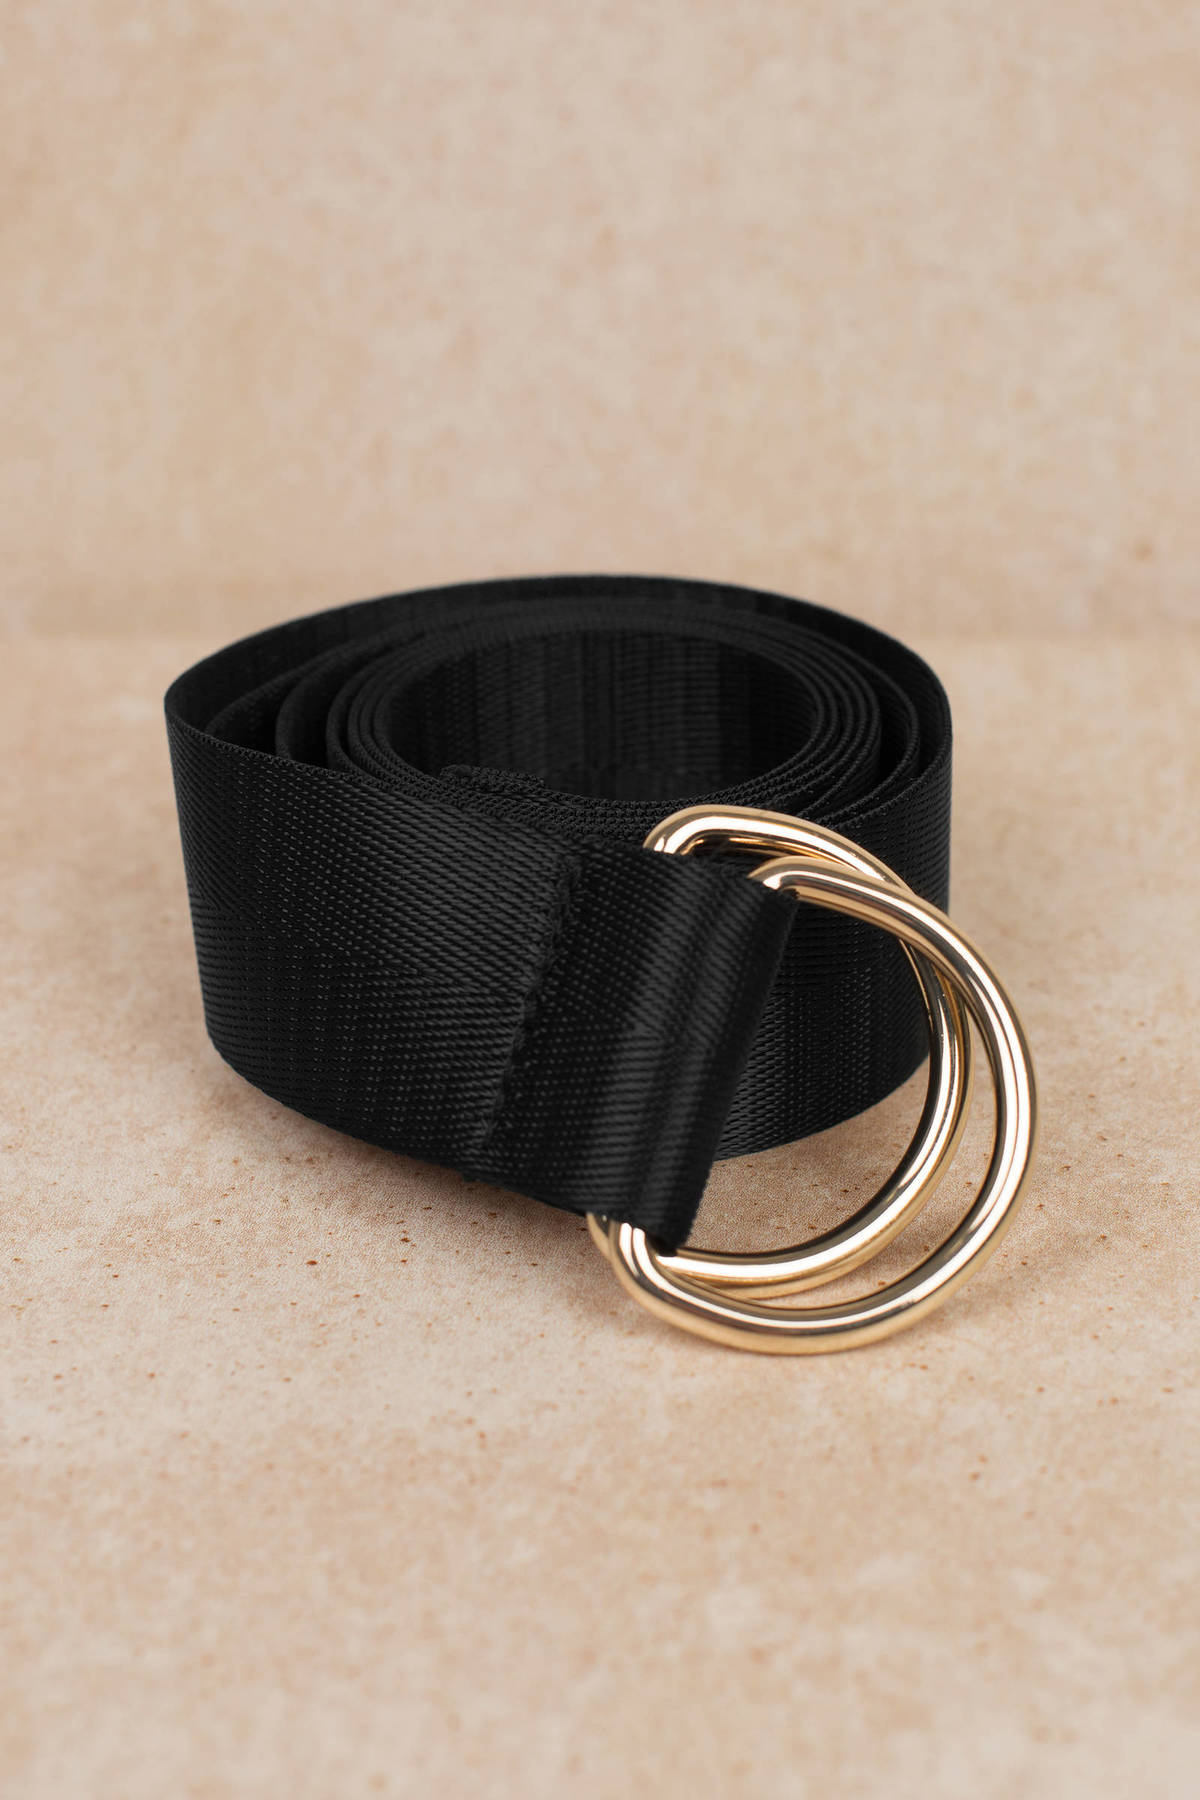 Black Belt - Sleek Belt - Black O Ring Belt - Hanging Belt